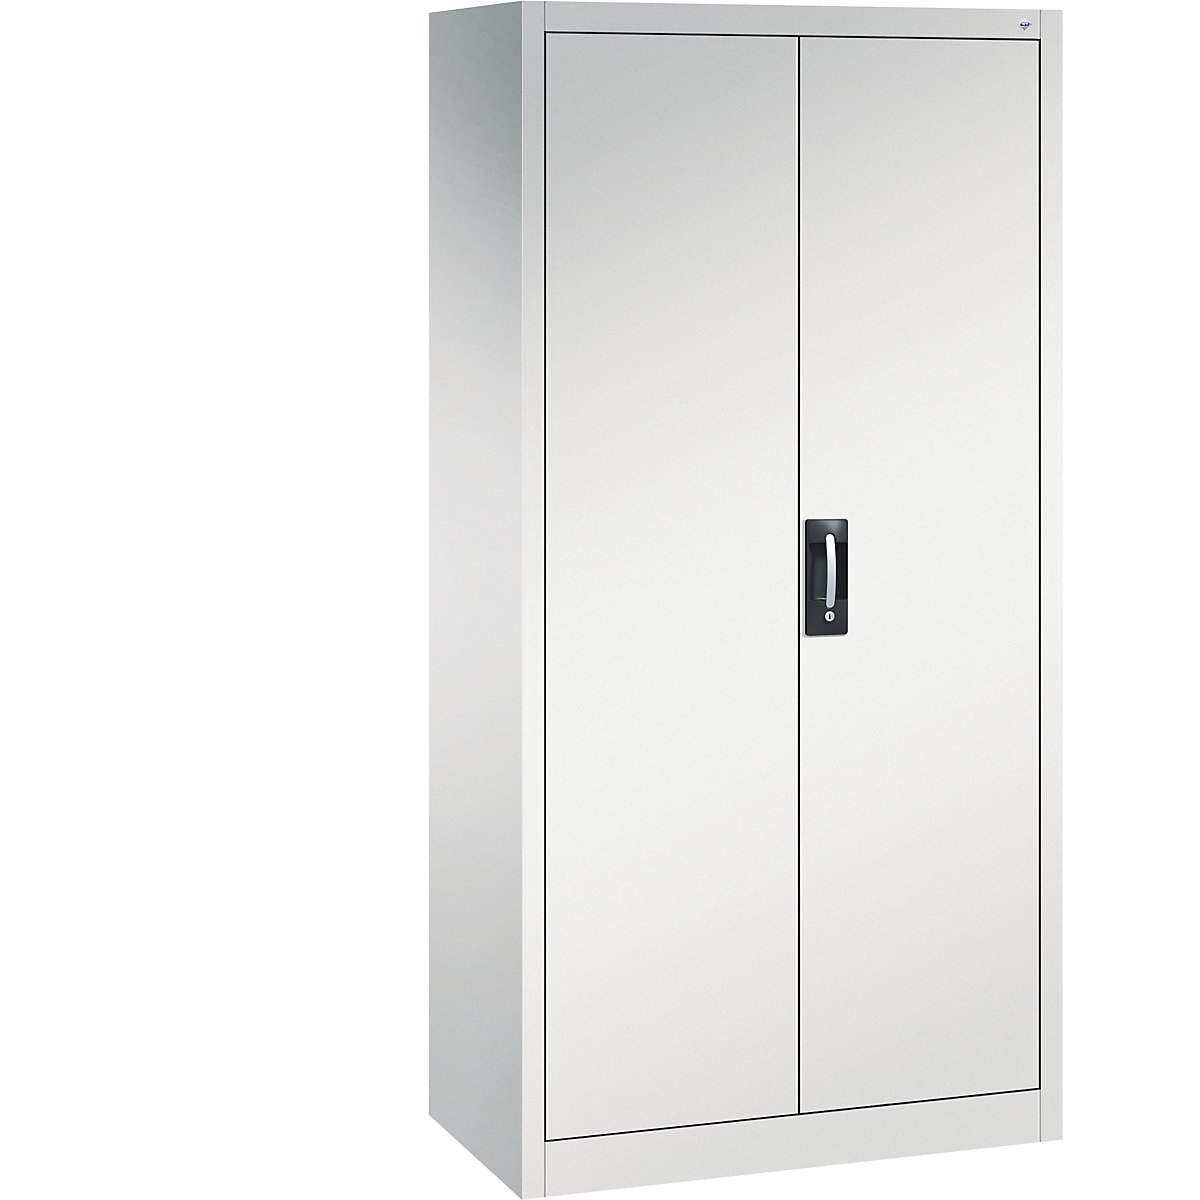 ADB - Armario de metal para taller (2 puertas, 100 x 30 x 100 cm